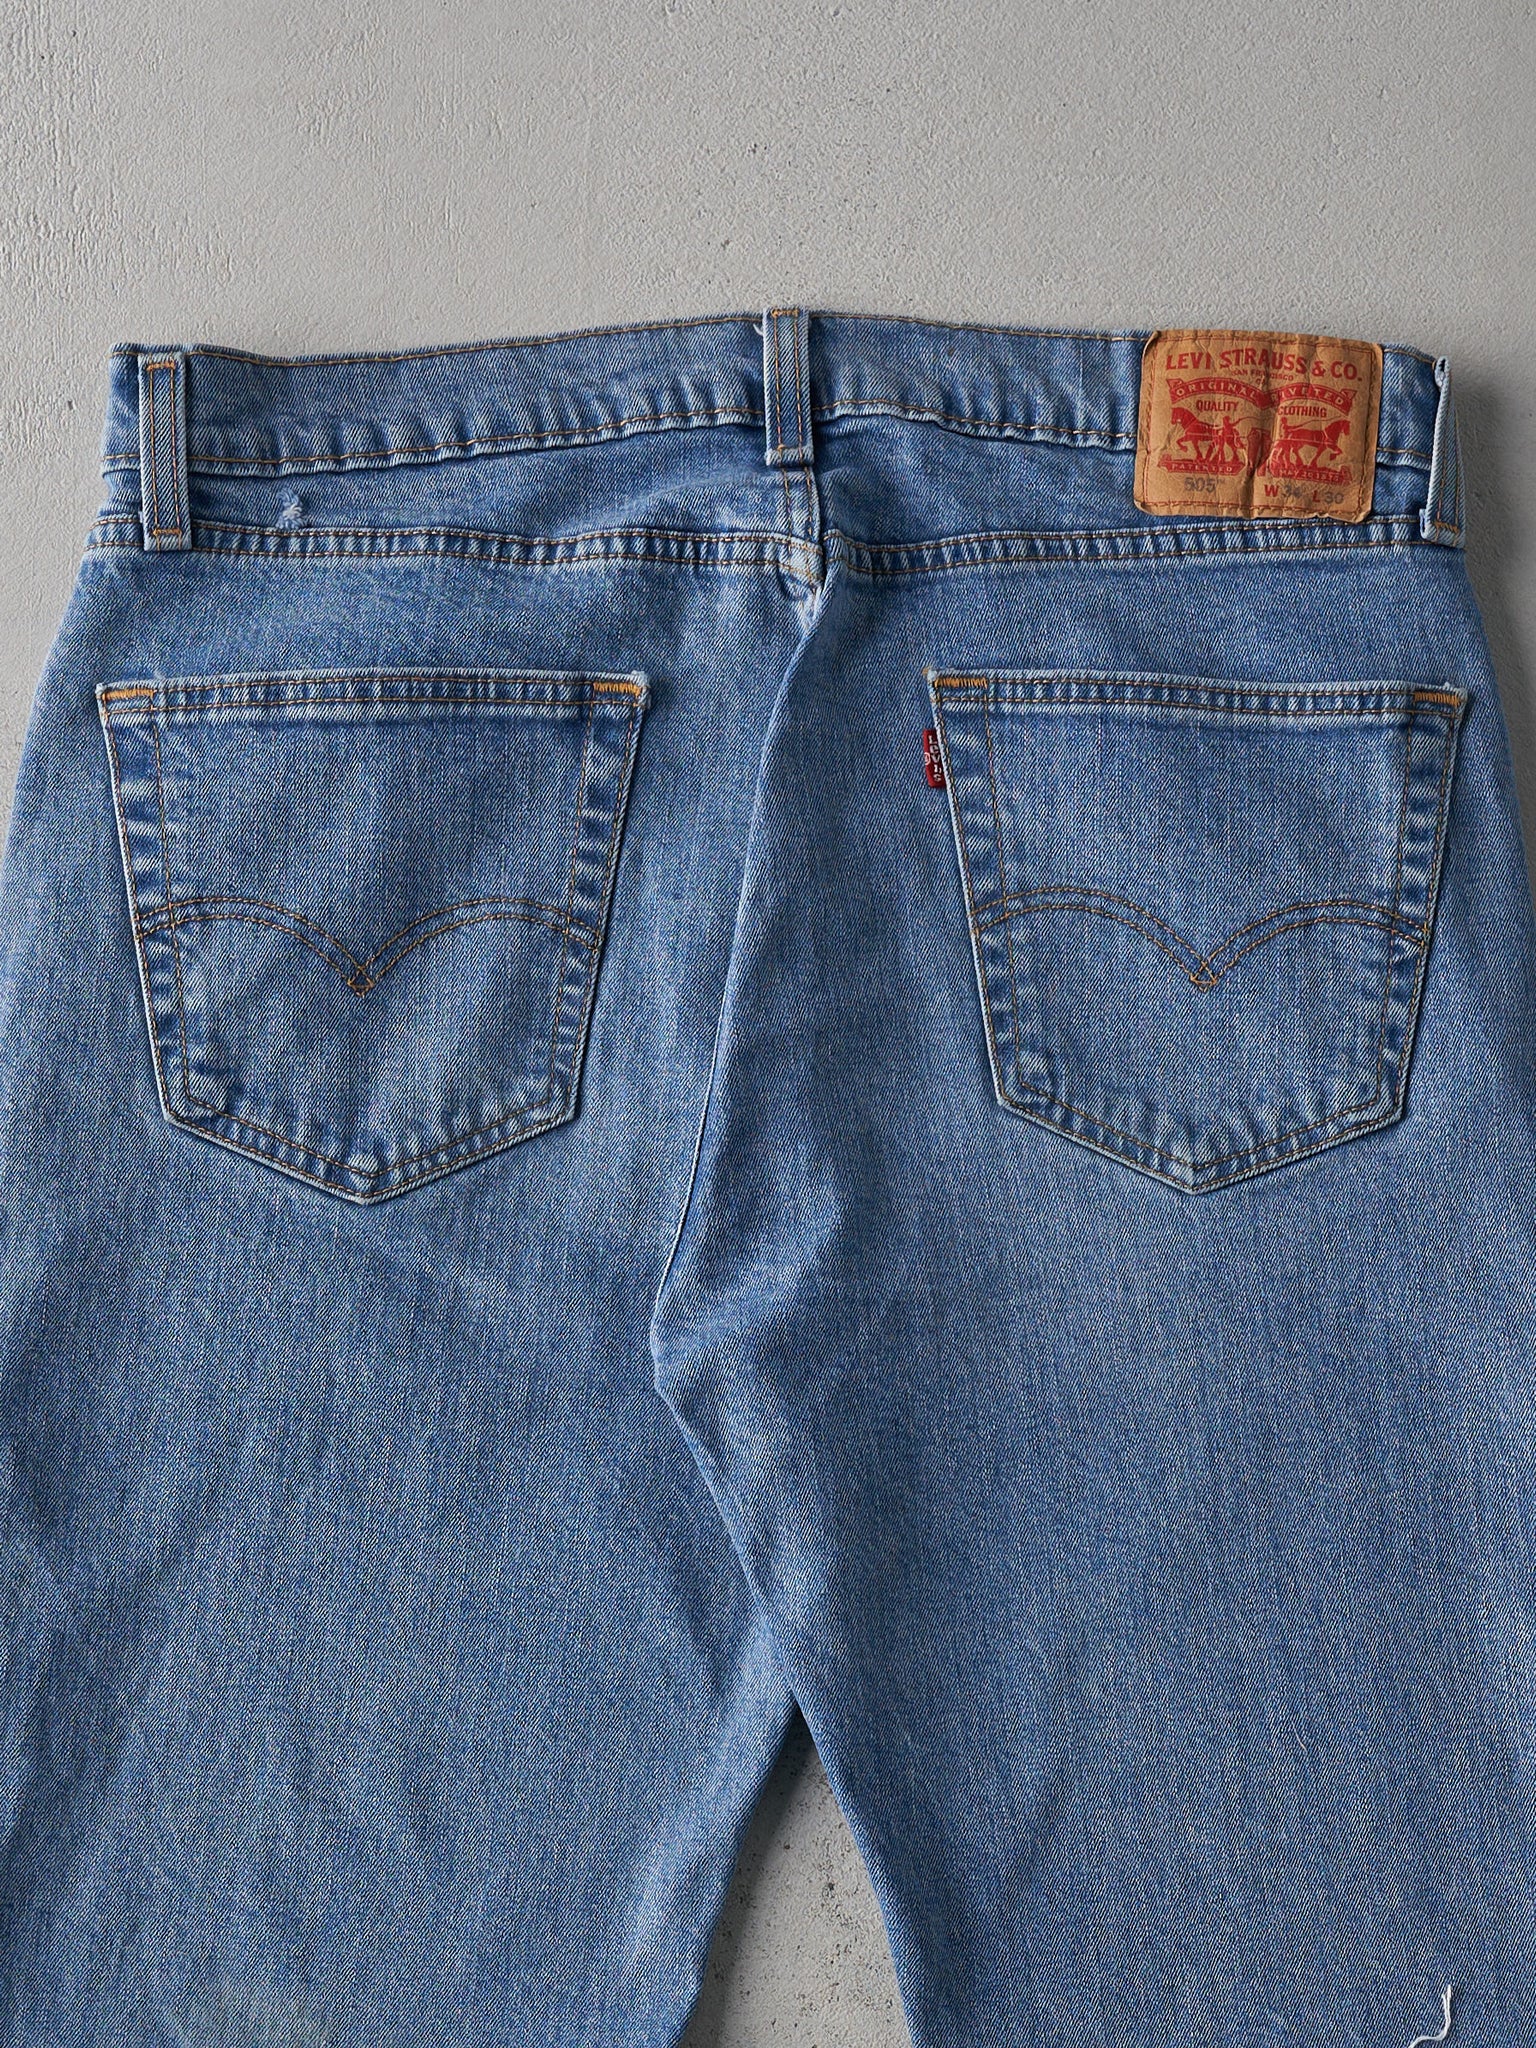 Vintage Y2K Mid Wash Levi's 505 Cut Off Denim Shorts (34x10)